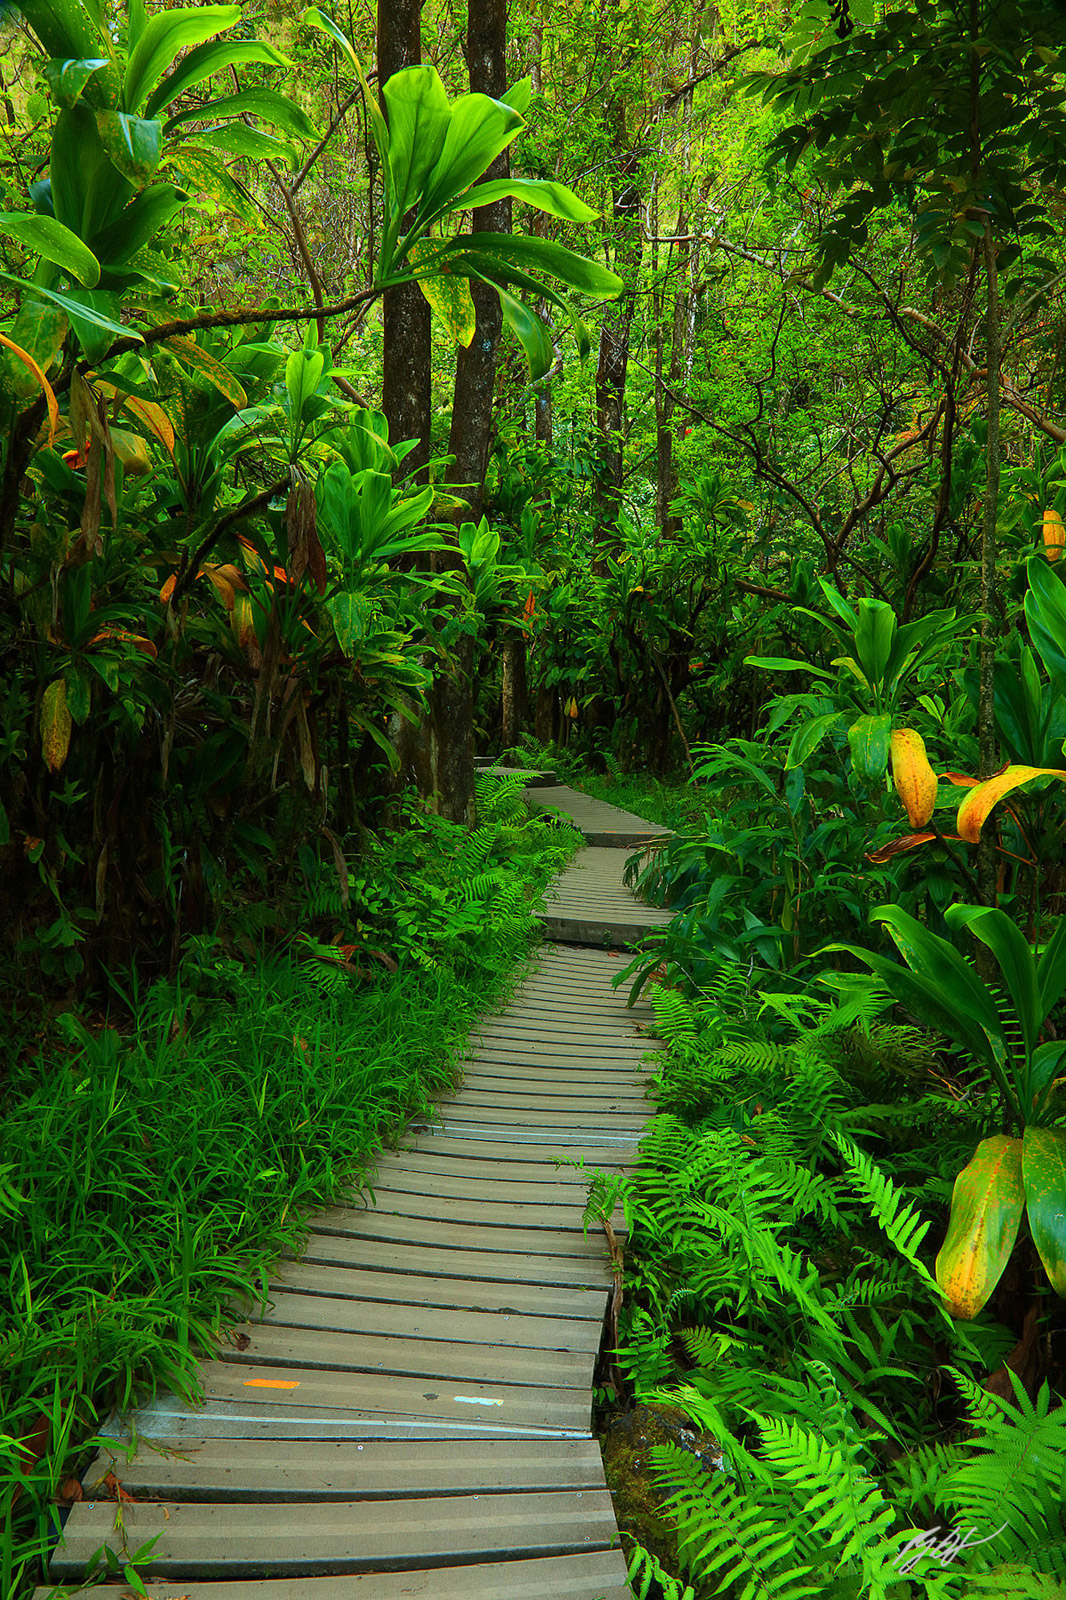 Along the Pipiwai Trail in Haleakala National Park on the island of Maui, Hawaii